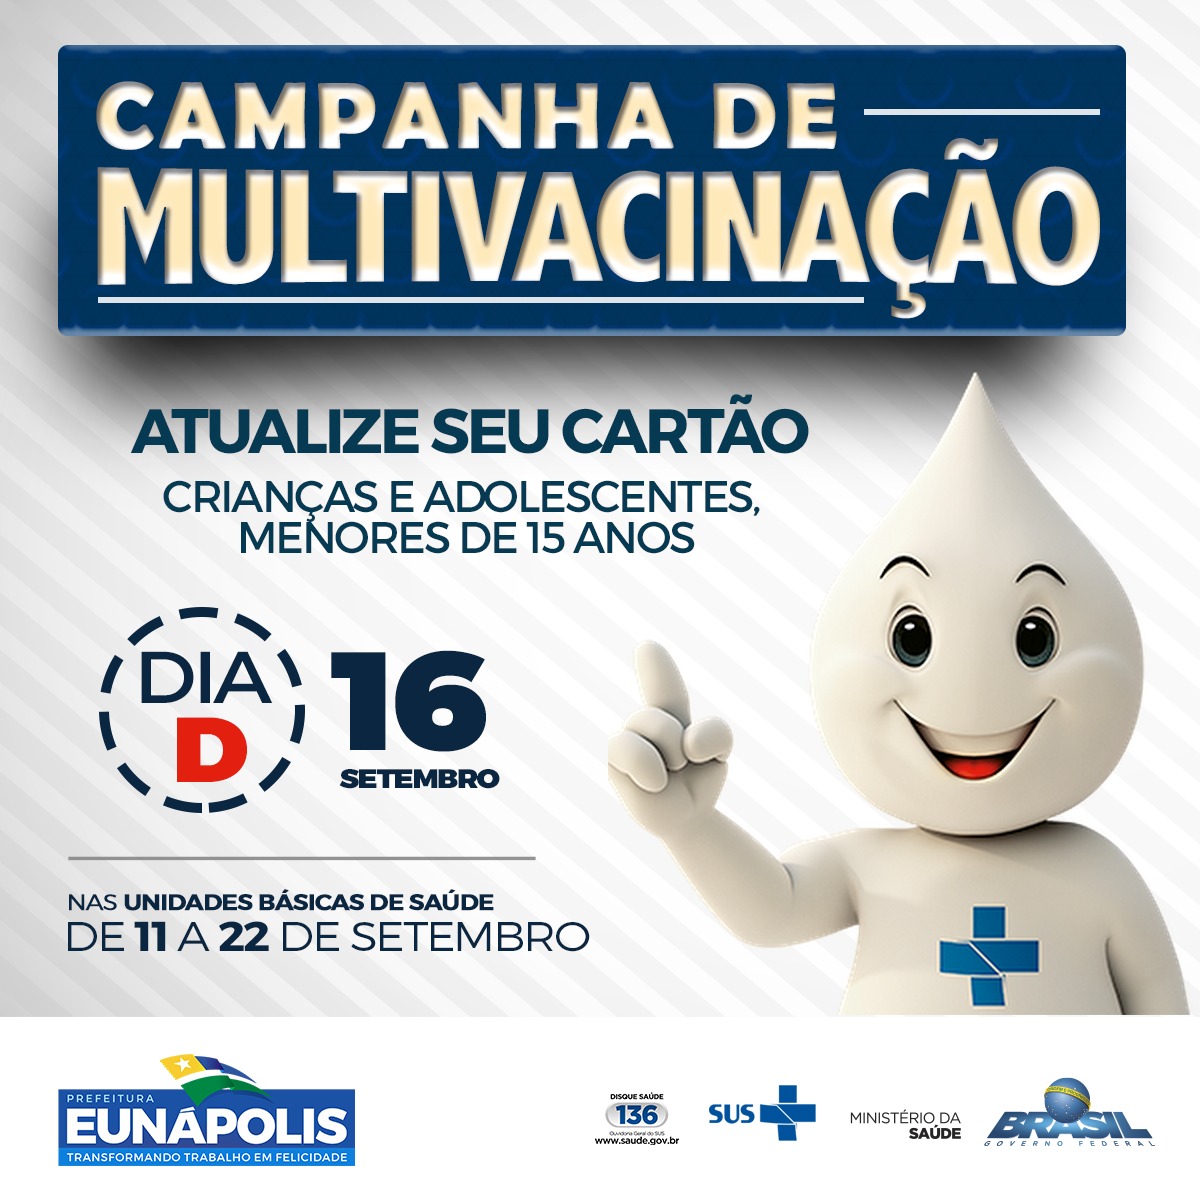 Prefeitura de Eunápolis inicia Campanha de Multivacinação 41